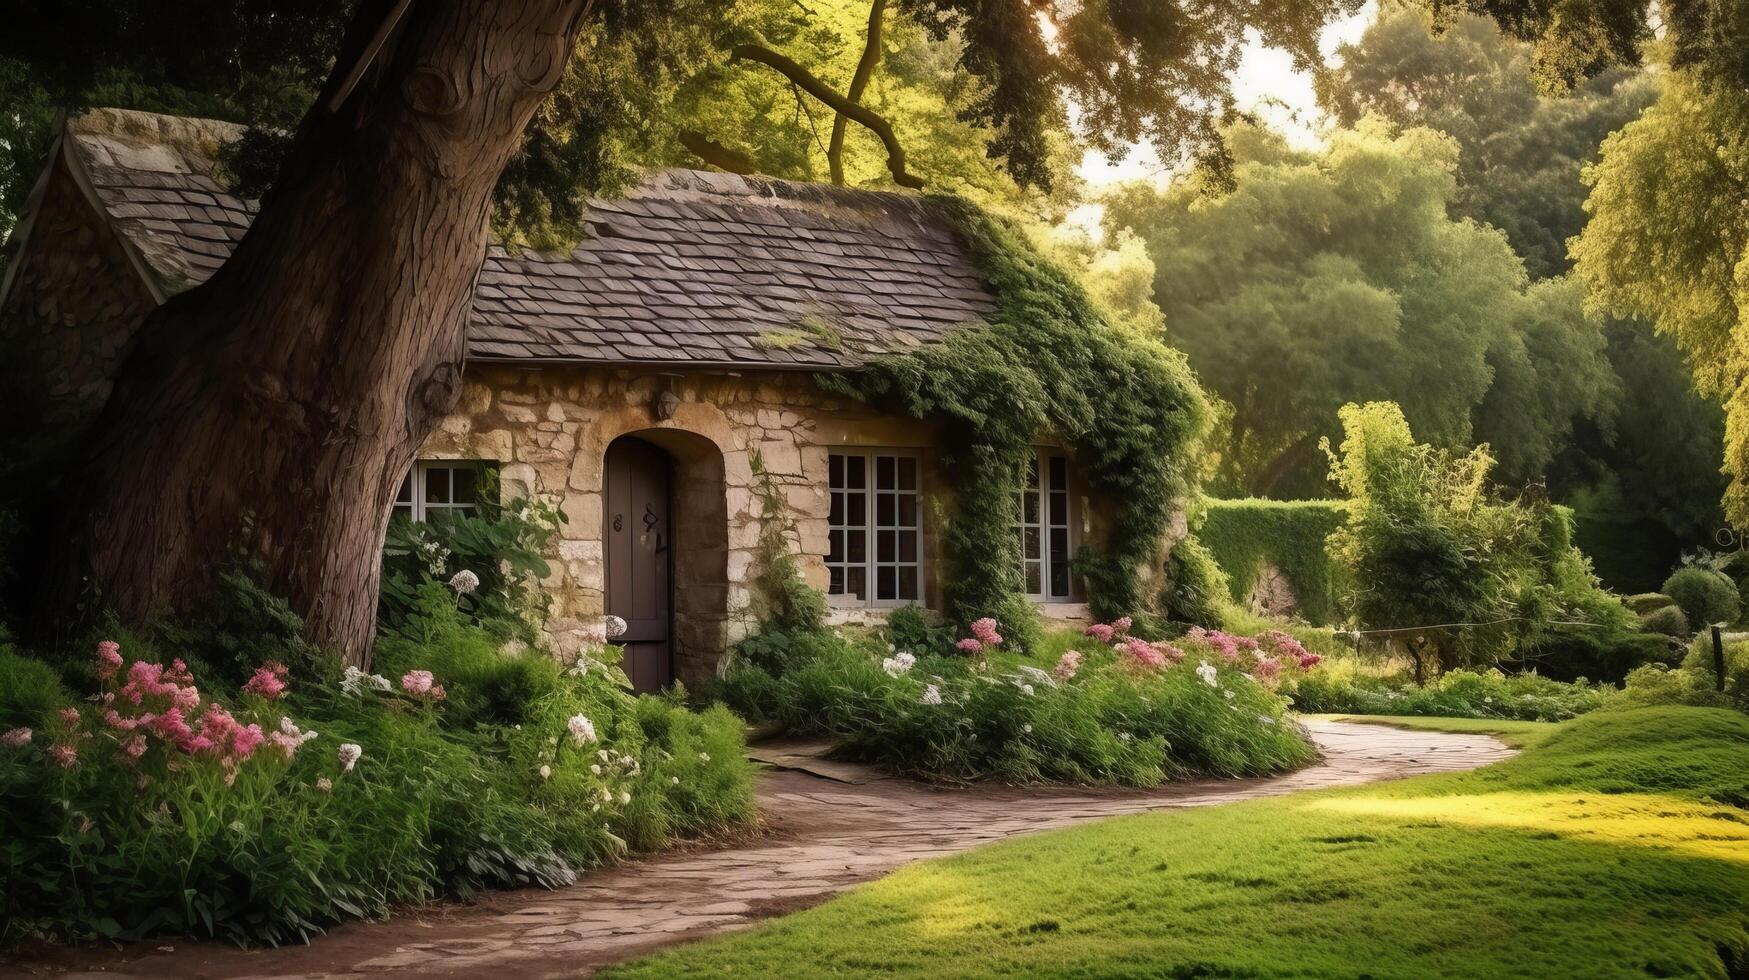 tranquille jardin entoure ancien pierre chalet photo